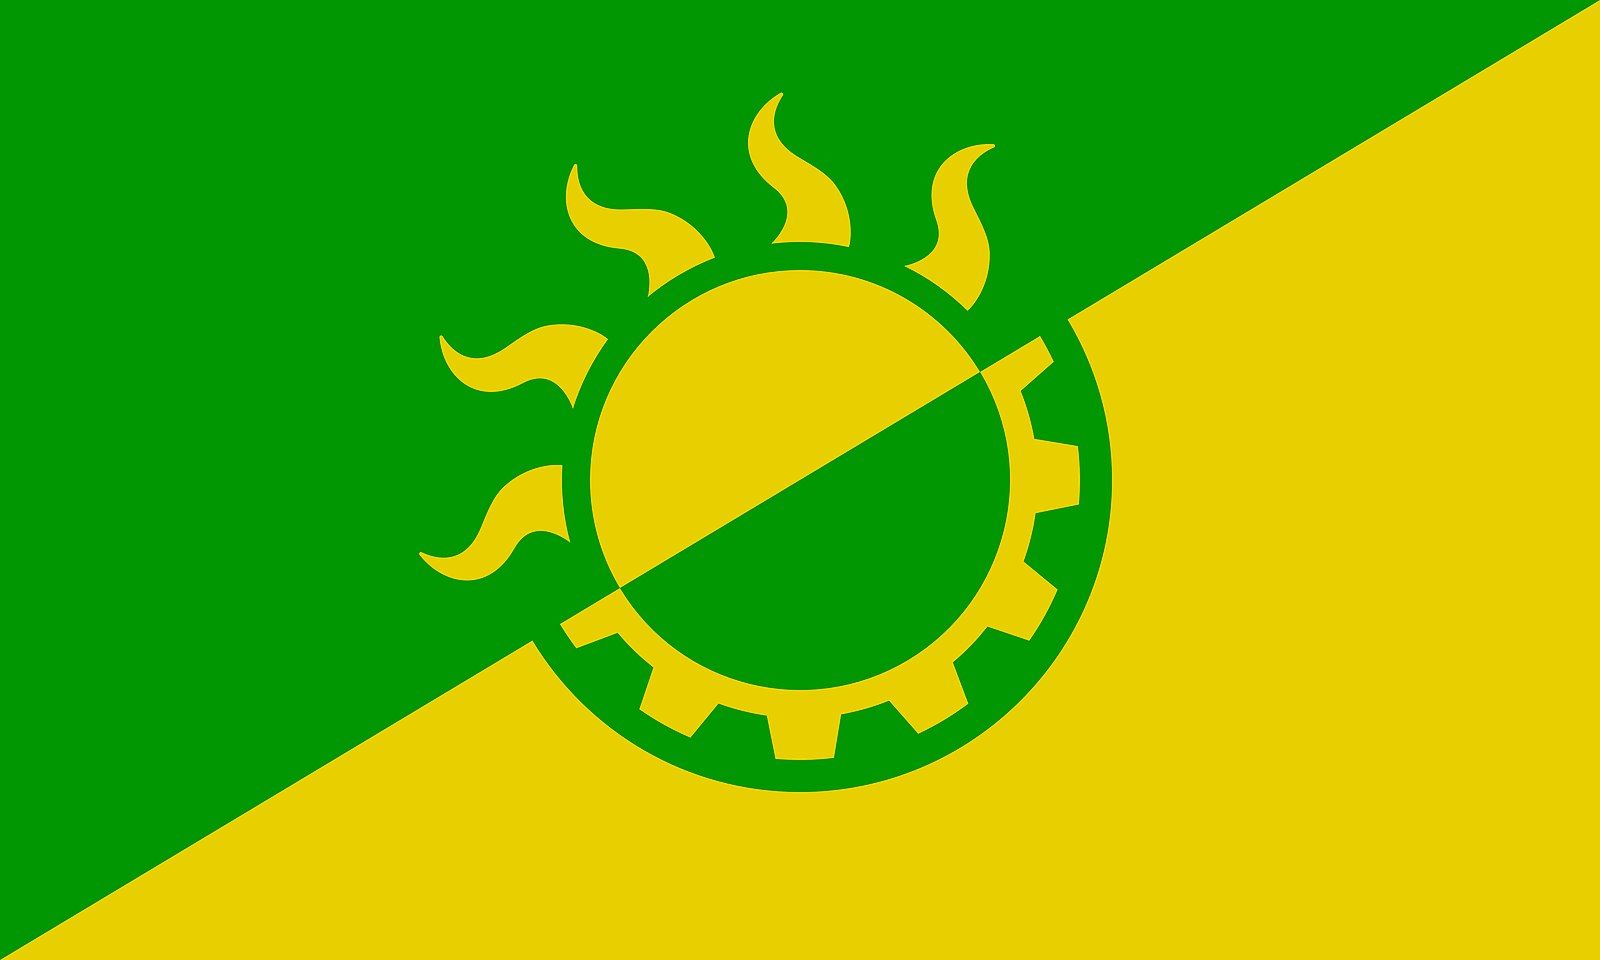 The solarpunk flag